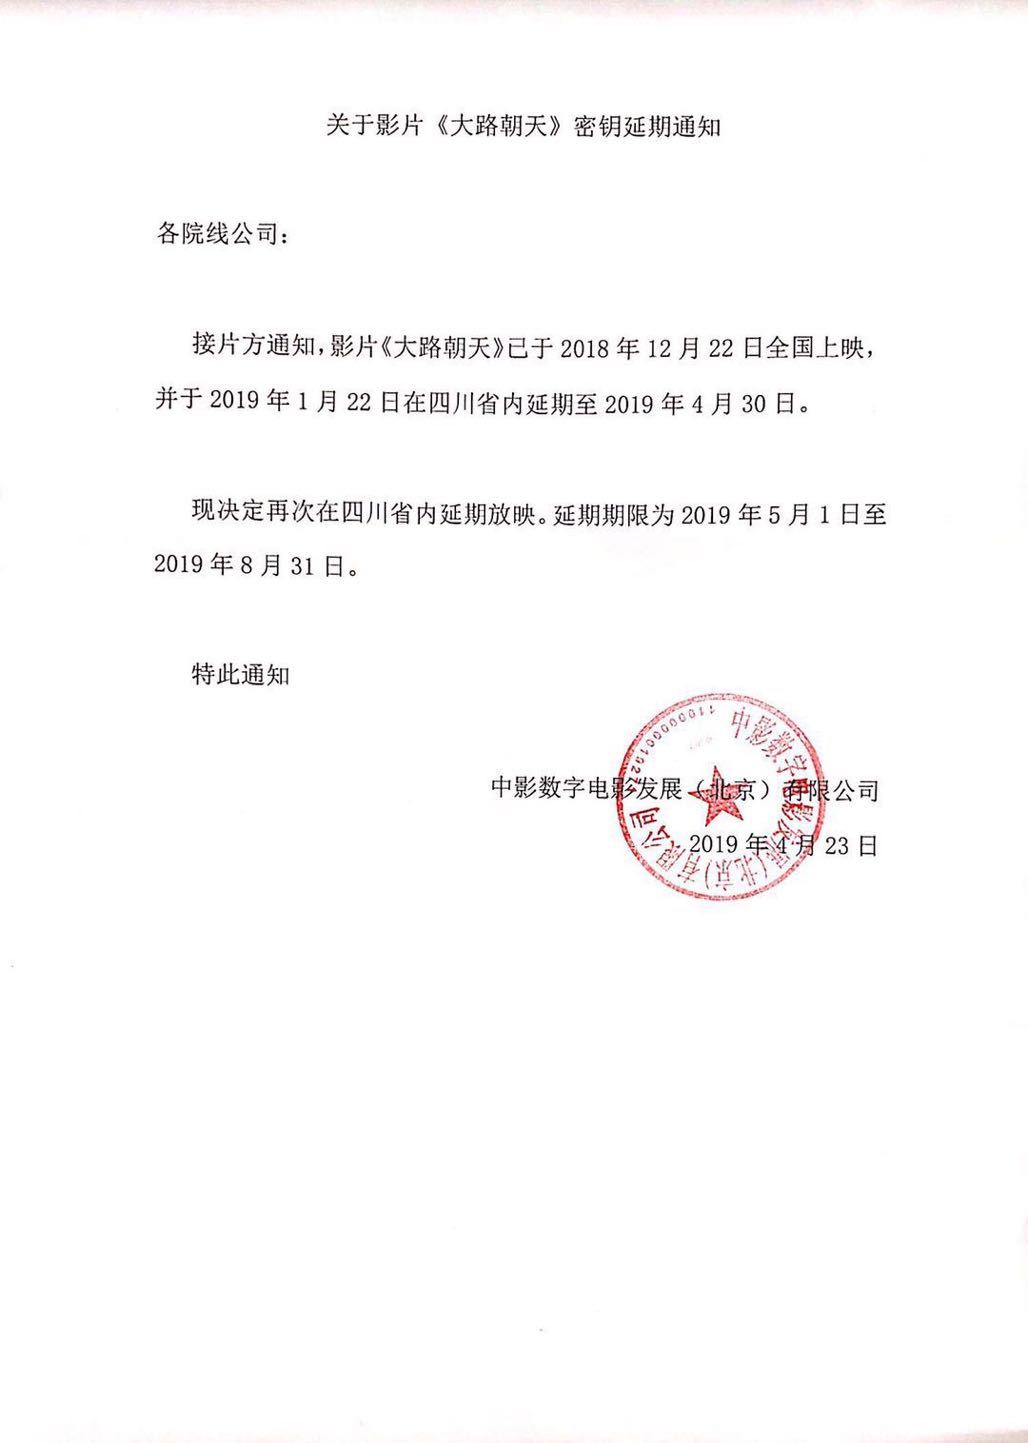 关于影片《大路朝天》四川省内密钥延期第二次延期至08月31日的通知